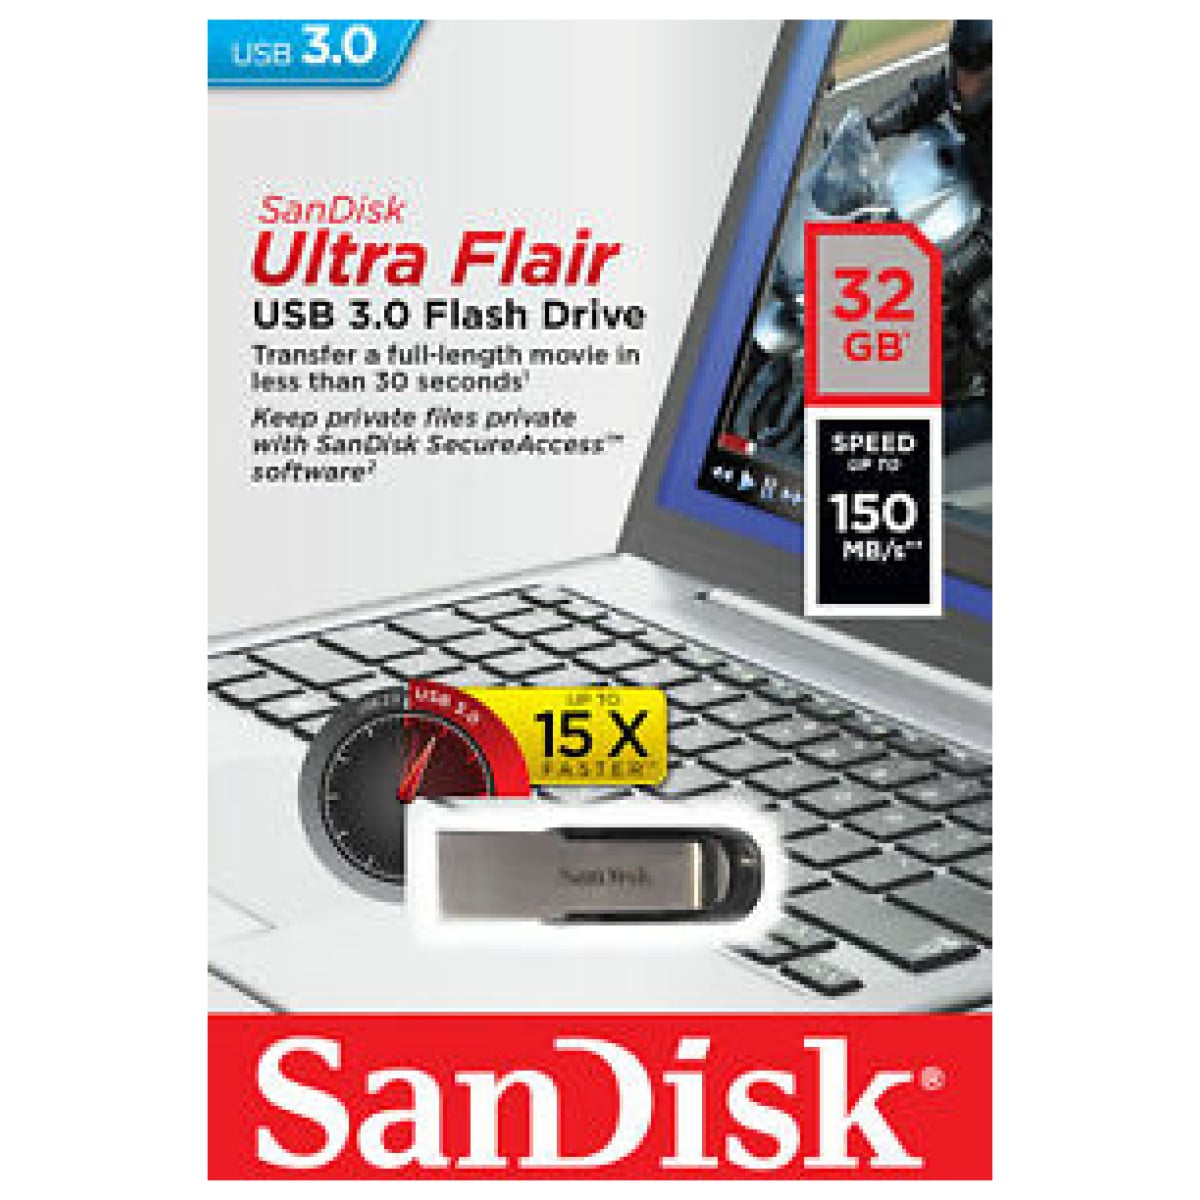 sandisk ultra usb 3.0 software download